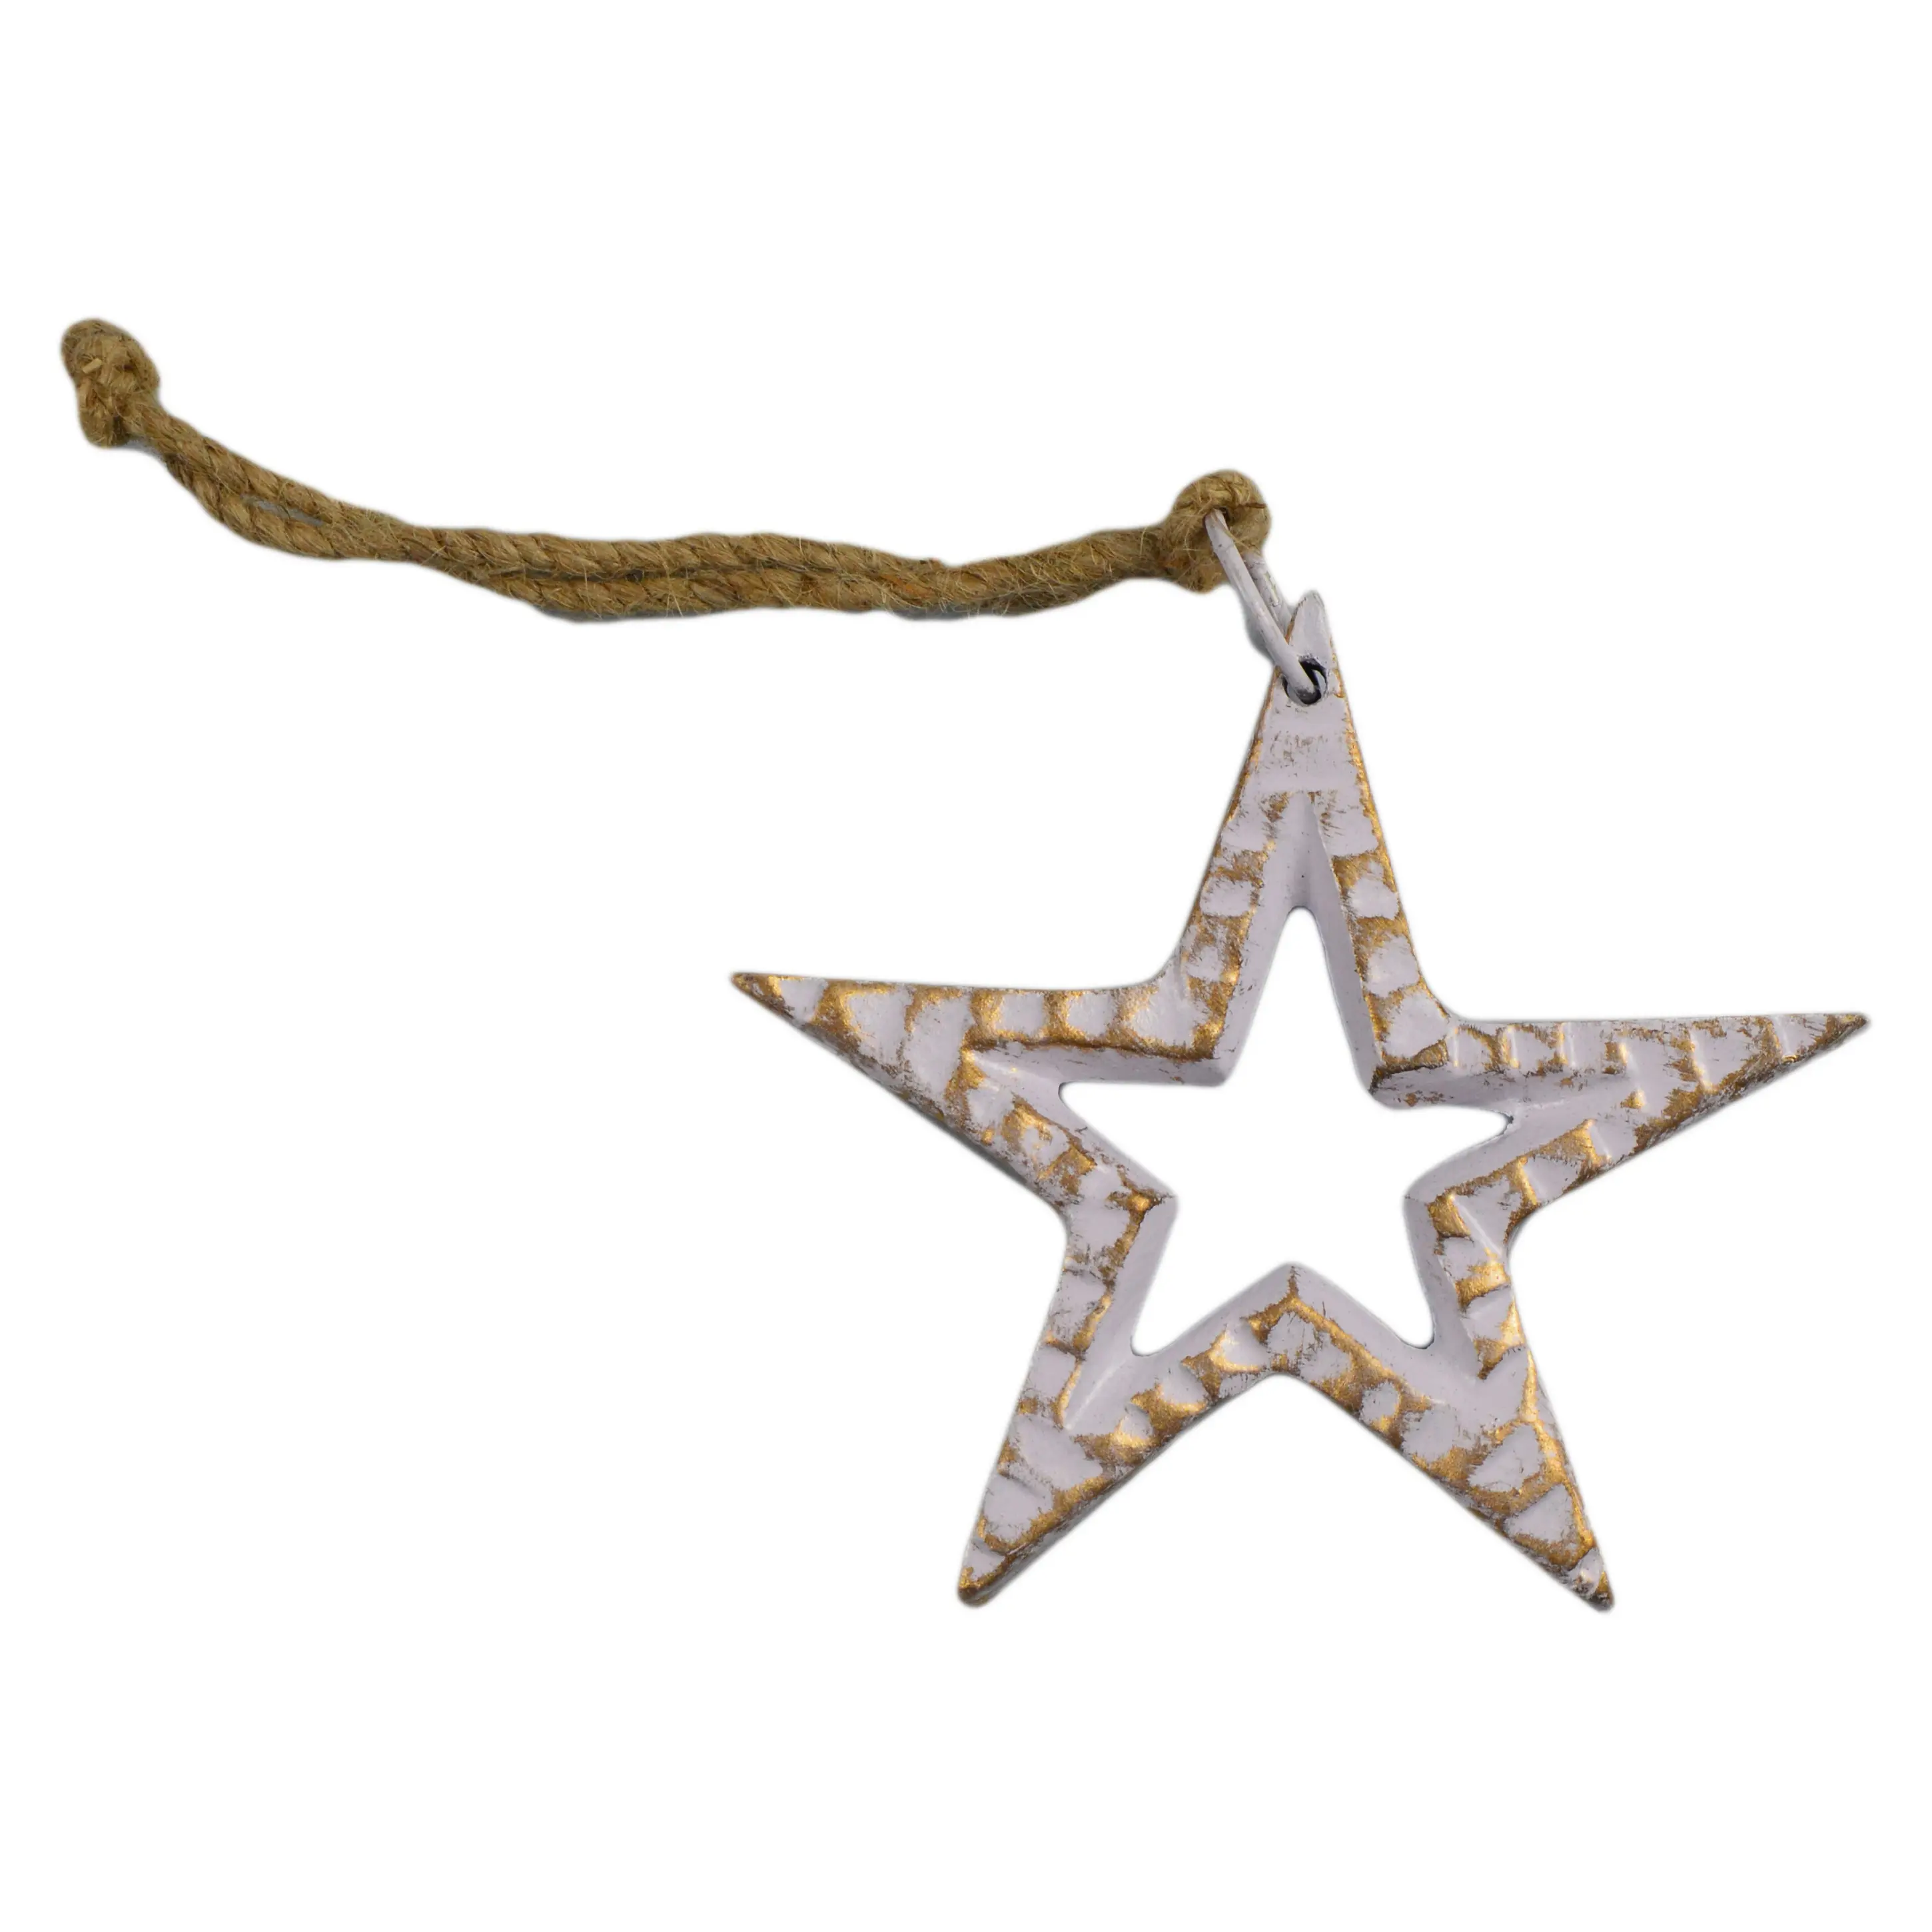 Vintage Design Weihnachts zimmer Dekoration Sterne Weihnachts baum hängen Stern für Home Room und Weihnachts dekor